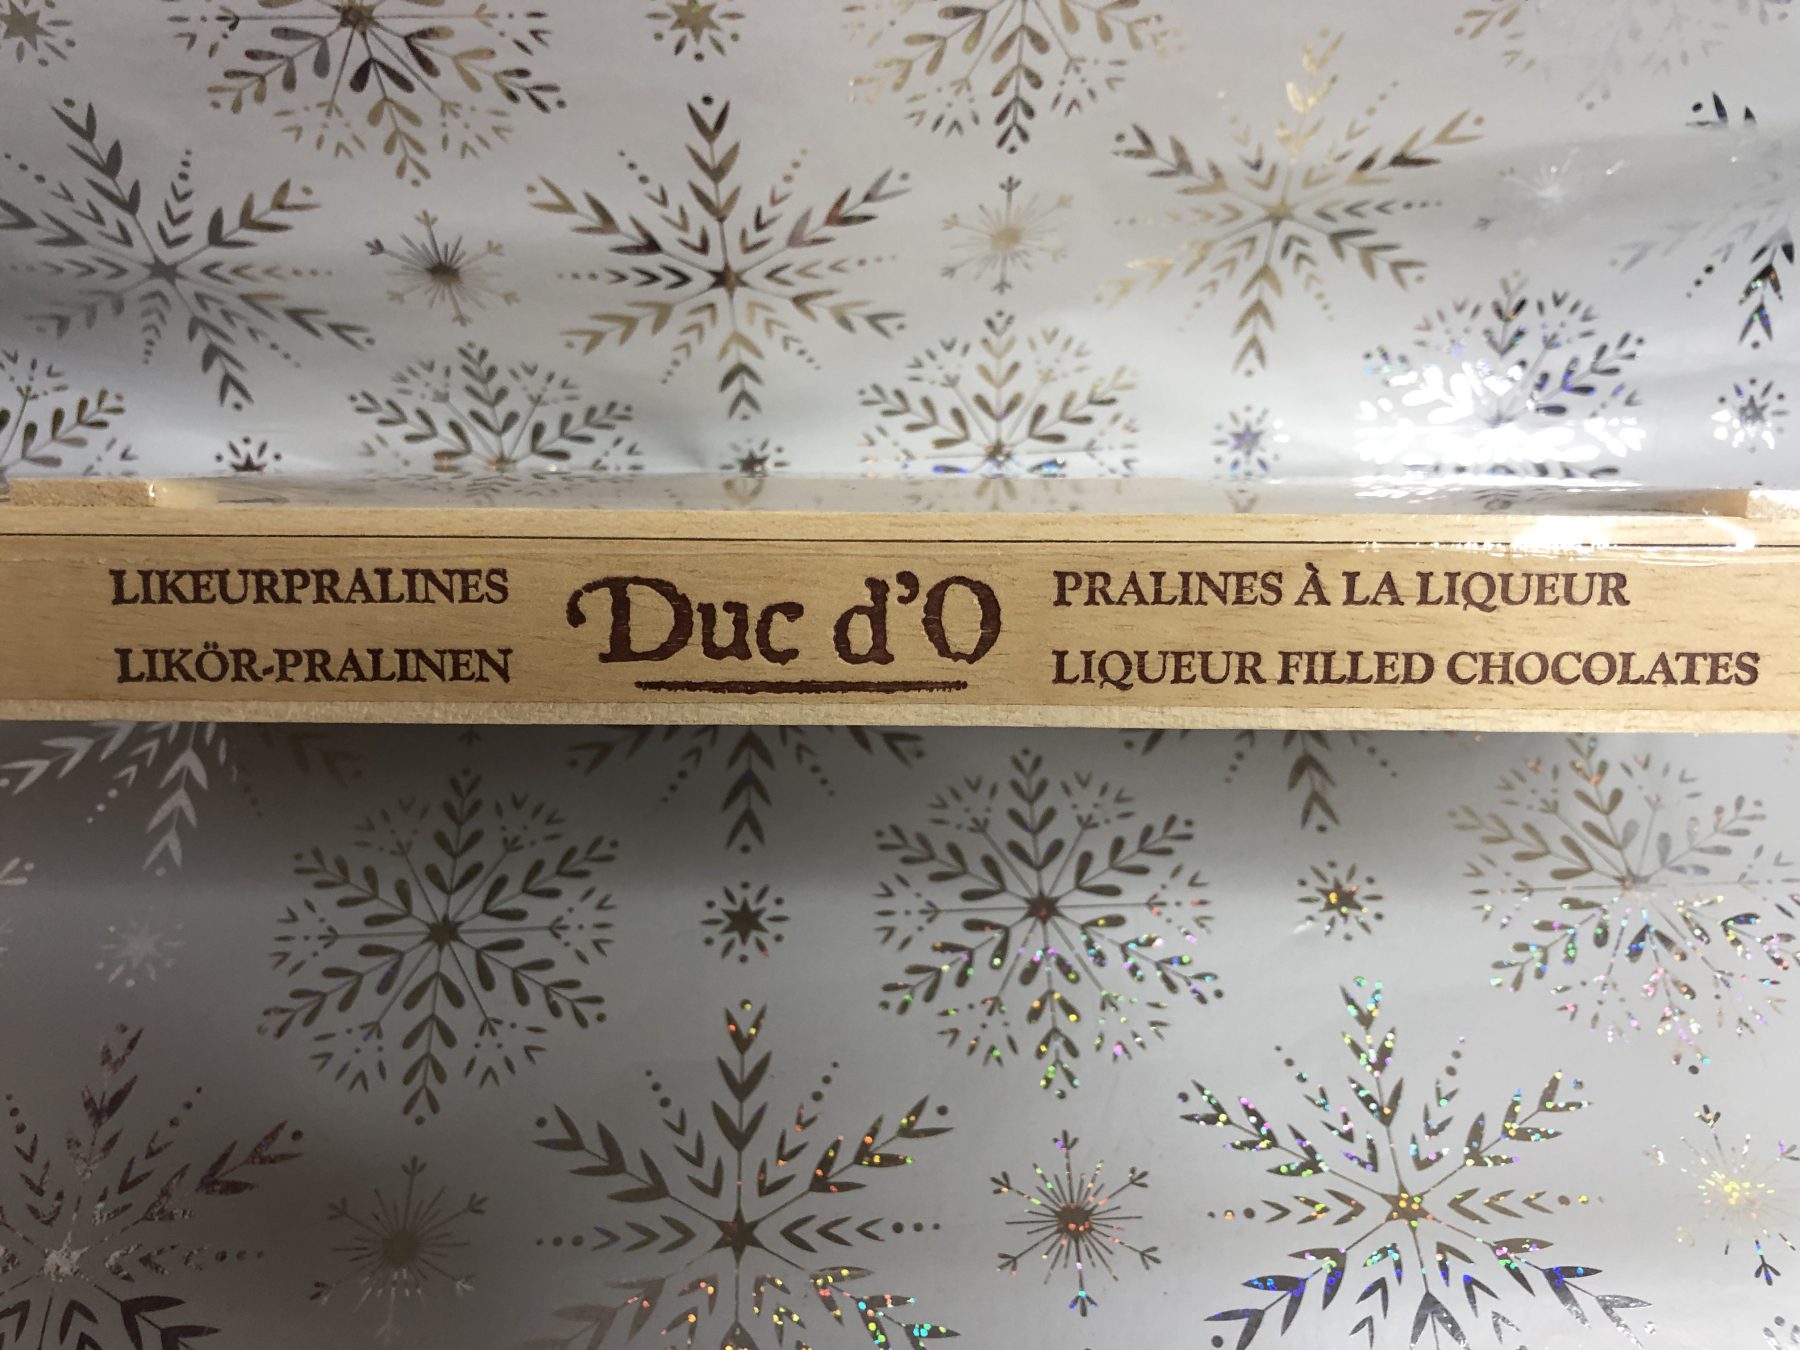 Duc d'O, liqueur filled pralines (500g)